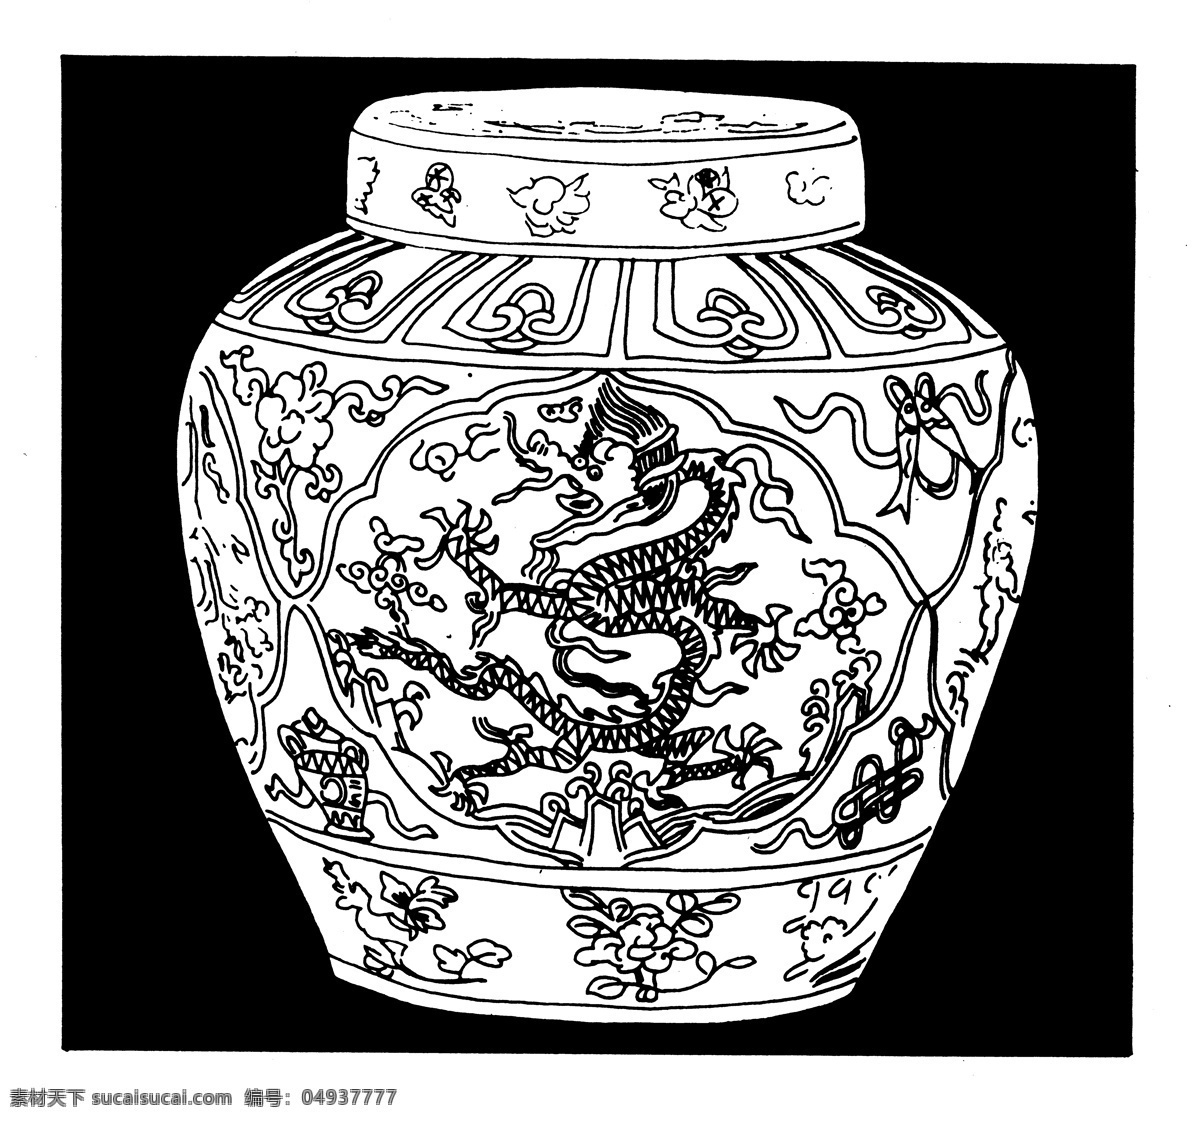 器物图案 元明时代图案 中国 传统 图案 设计素材 装饰图案 书画美术 黑色